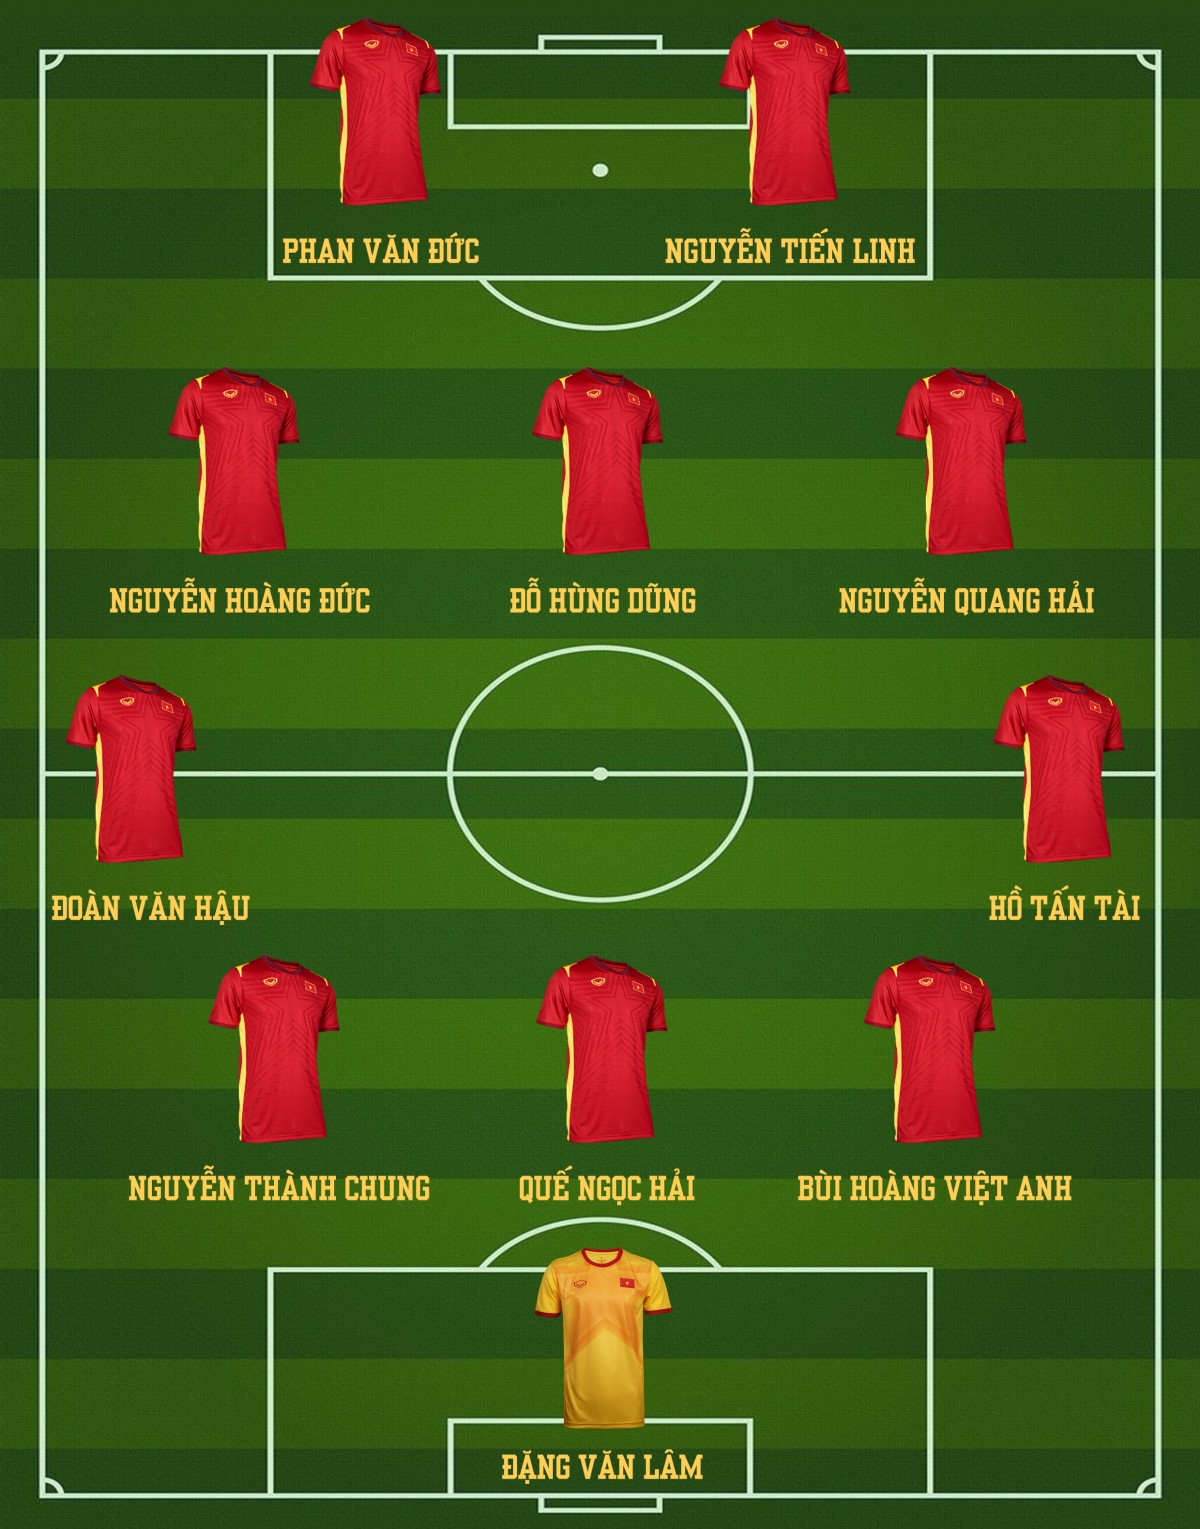 Dự đoán đội hình tối ưu của ĐT Việt Nam tại AFF Cup 2022